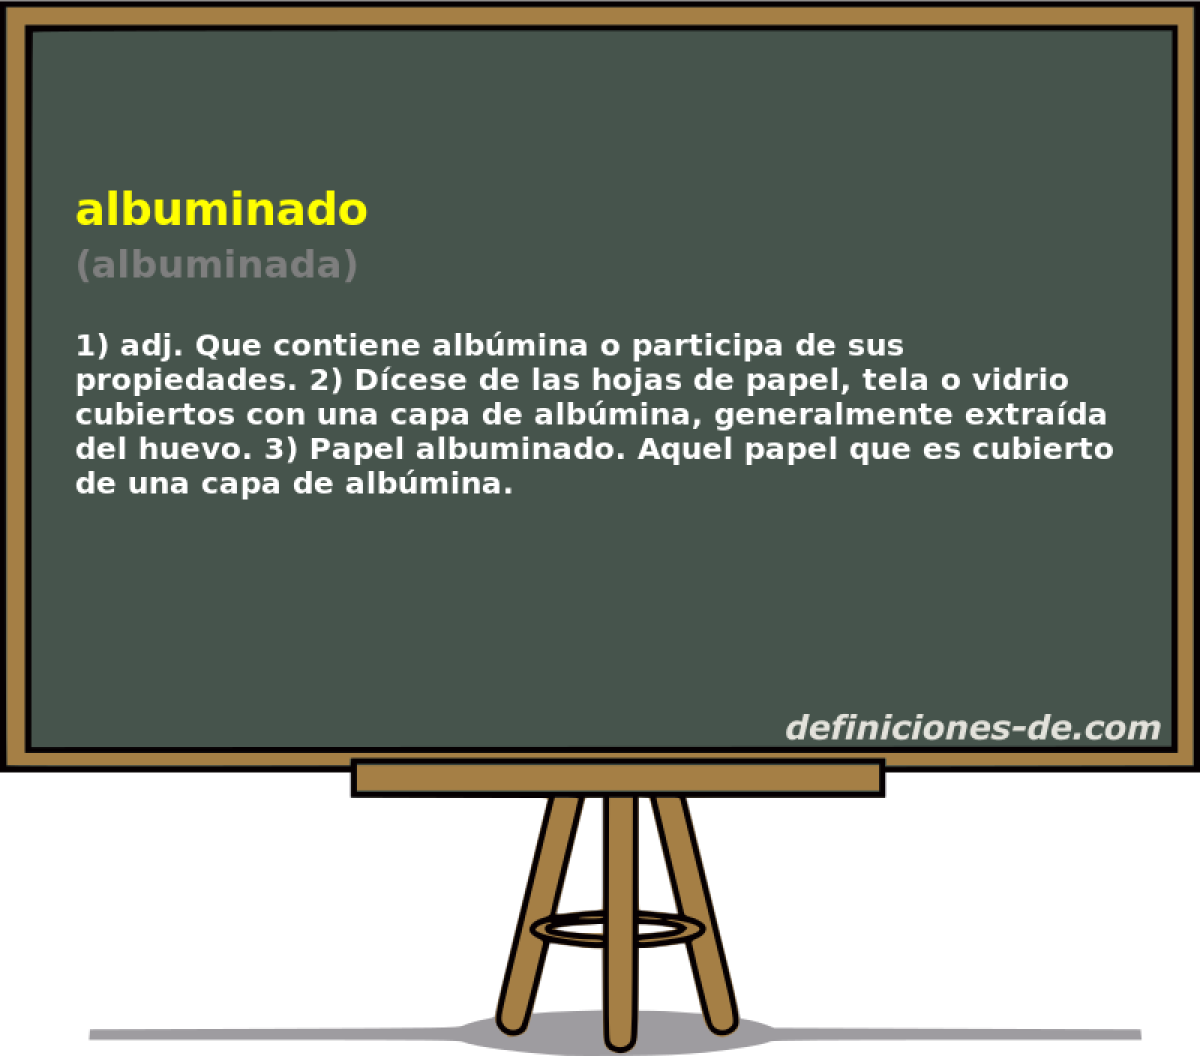 albuminado (albuminada)